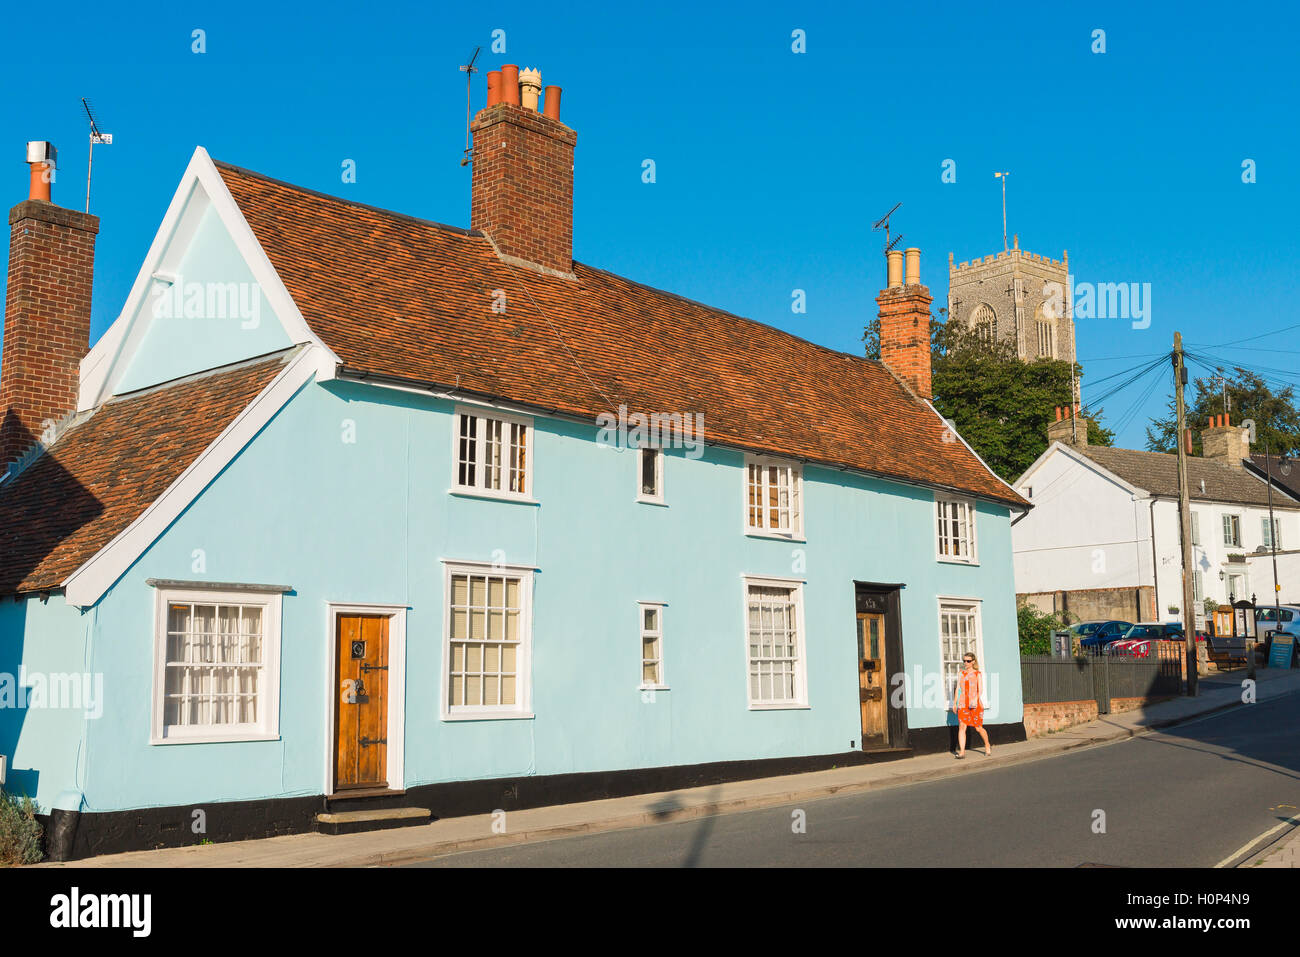 Suffolk Framlingham, une rangée de cottages datant de la période médiévale dans le village de Suffolk Framlingham, England, UK. Banque D'Images